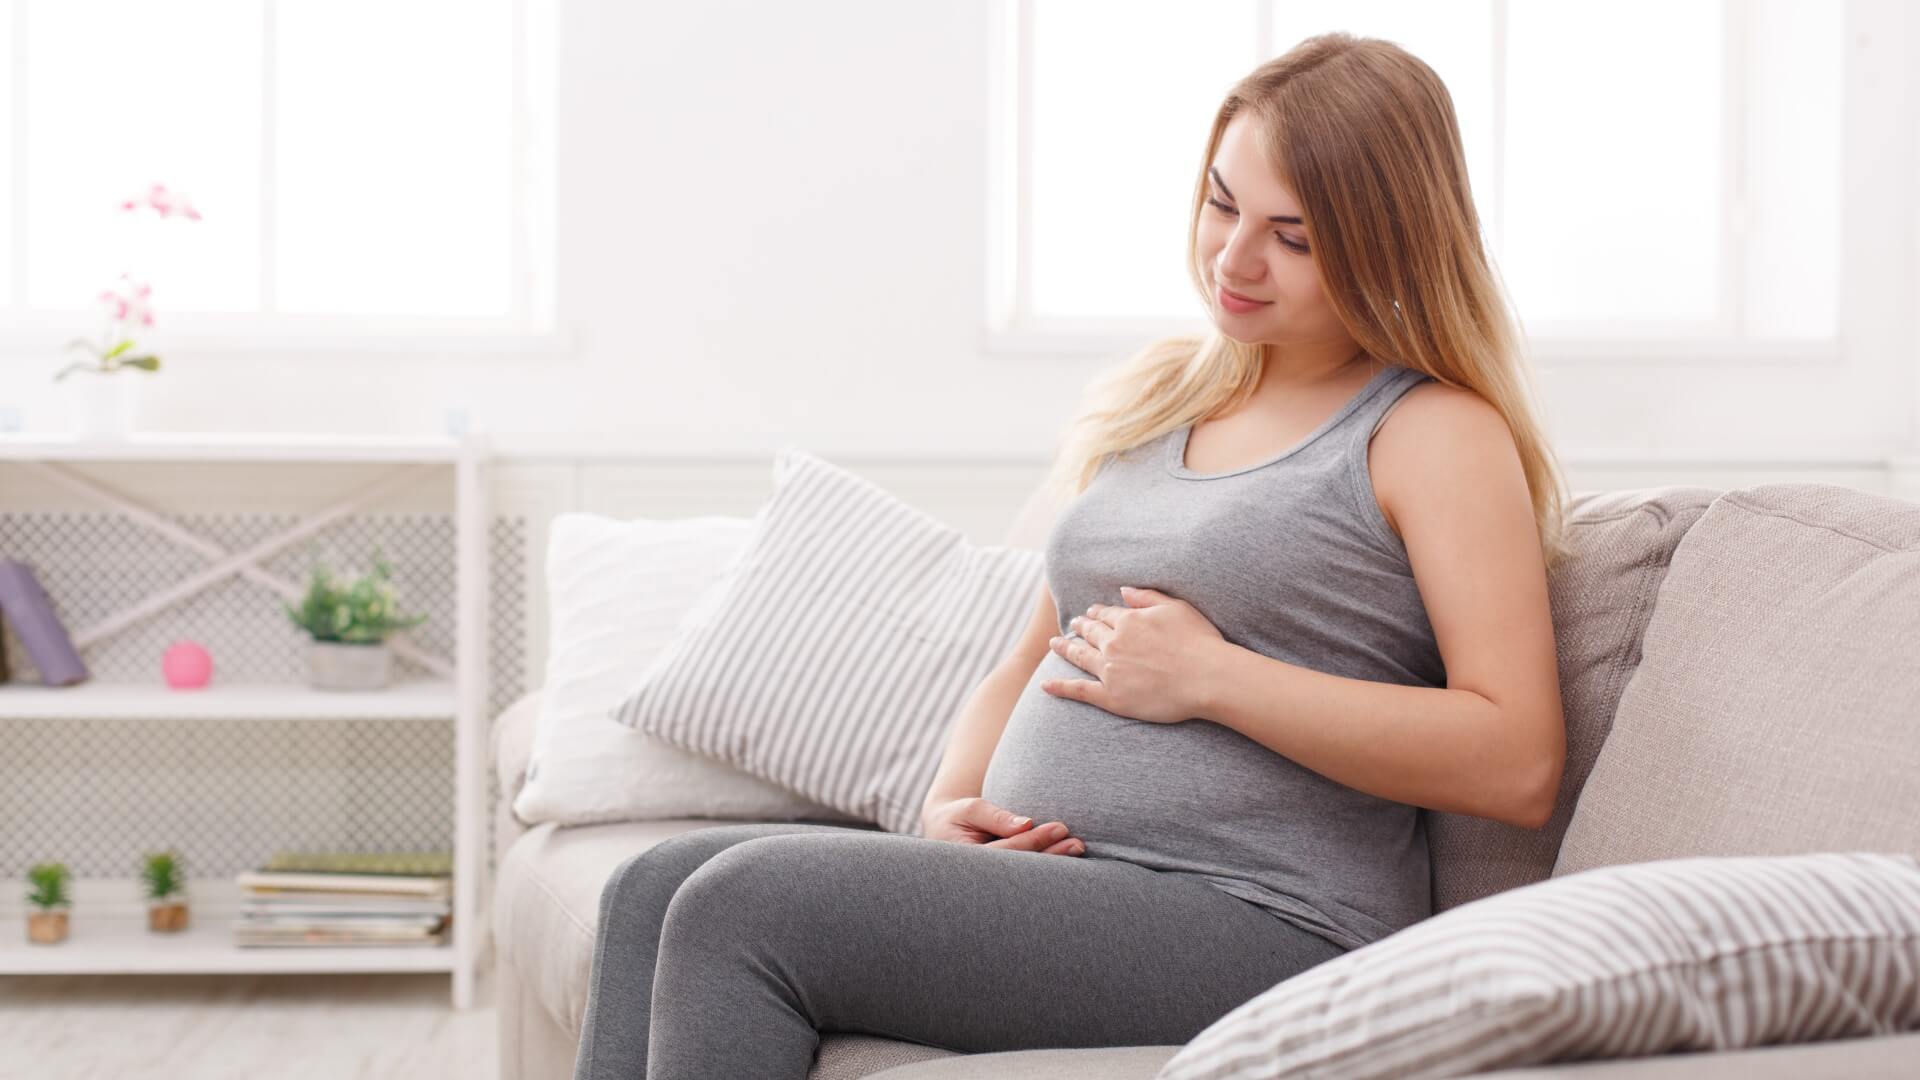 Является ли вздутие живота признаком беременности? - Donat